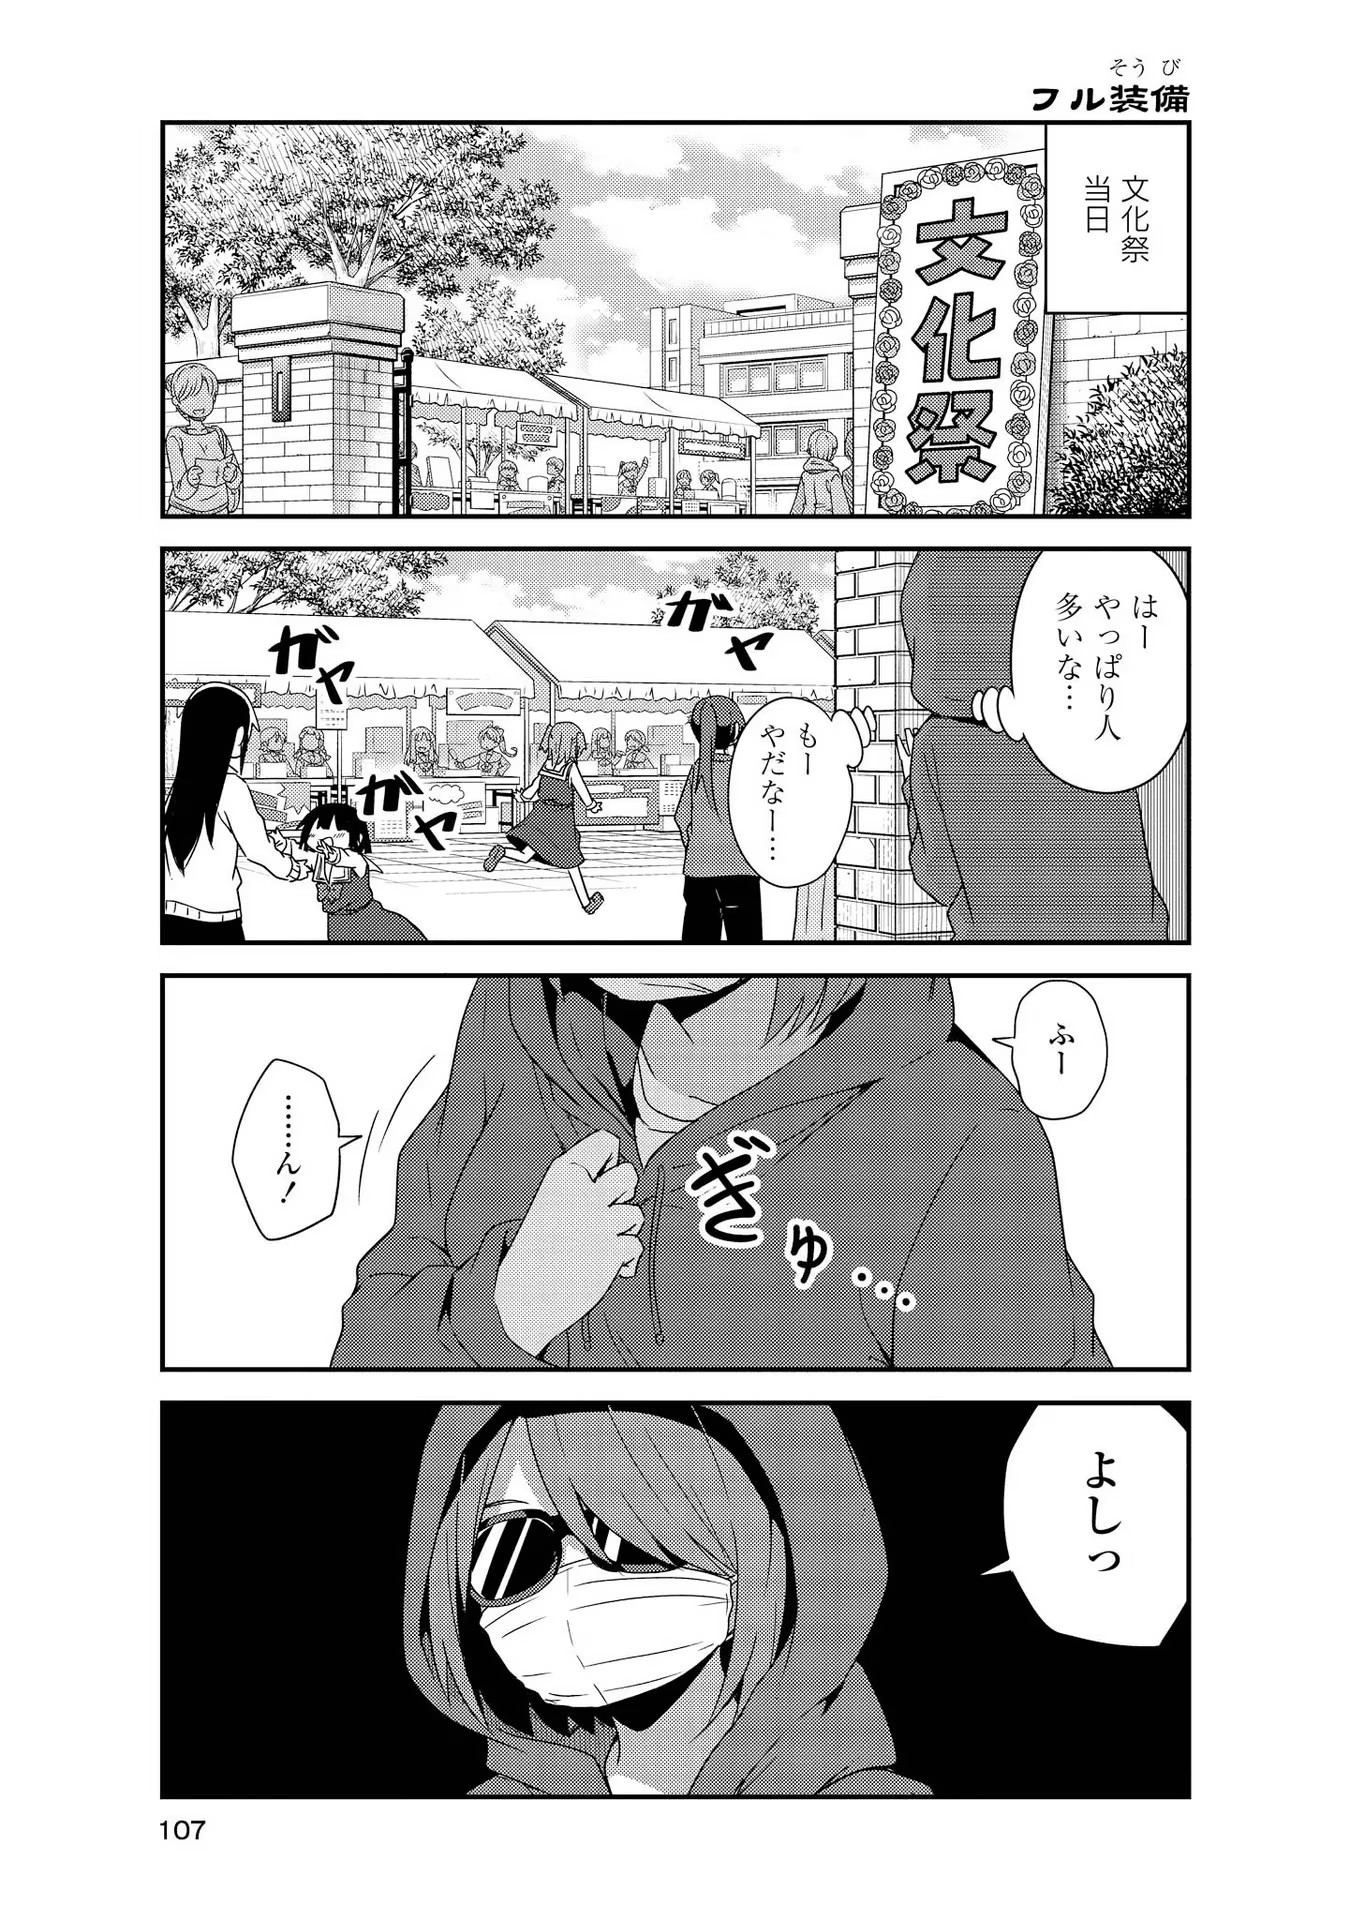 Watashi ni Tenshi ga Maiorita! - Chapter 35 - Page 1